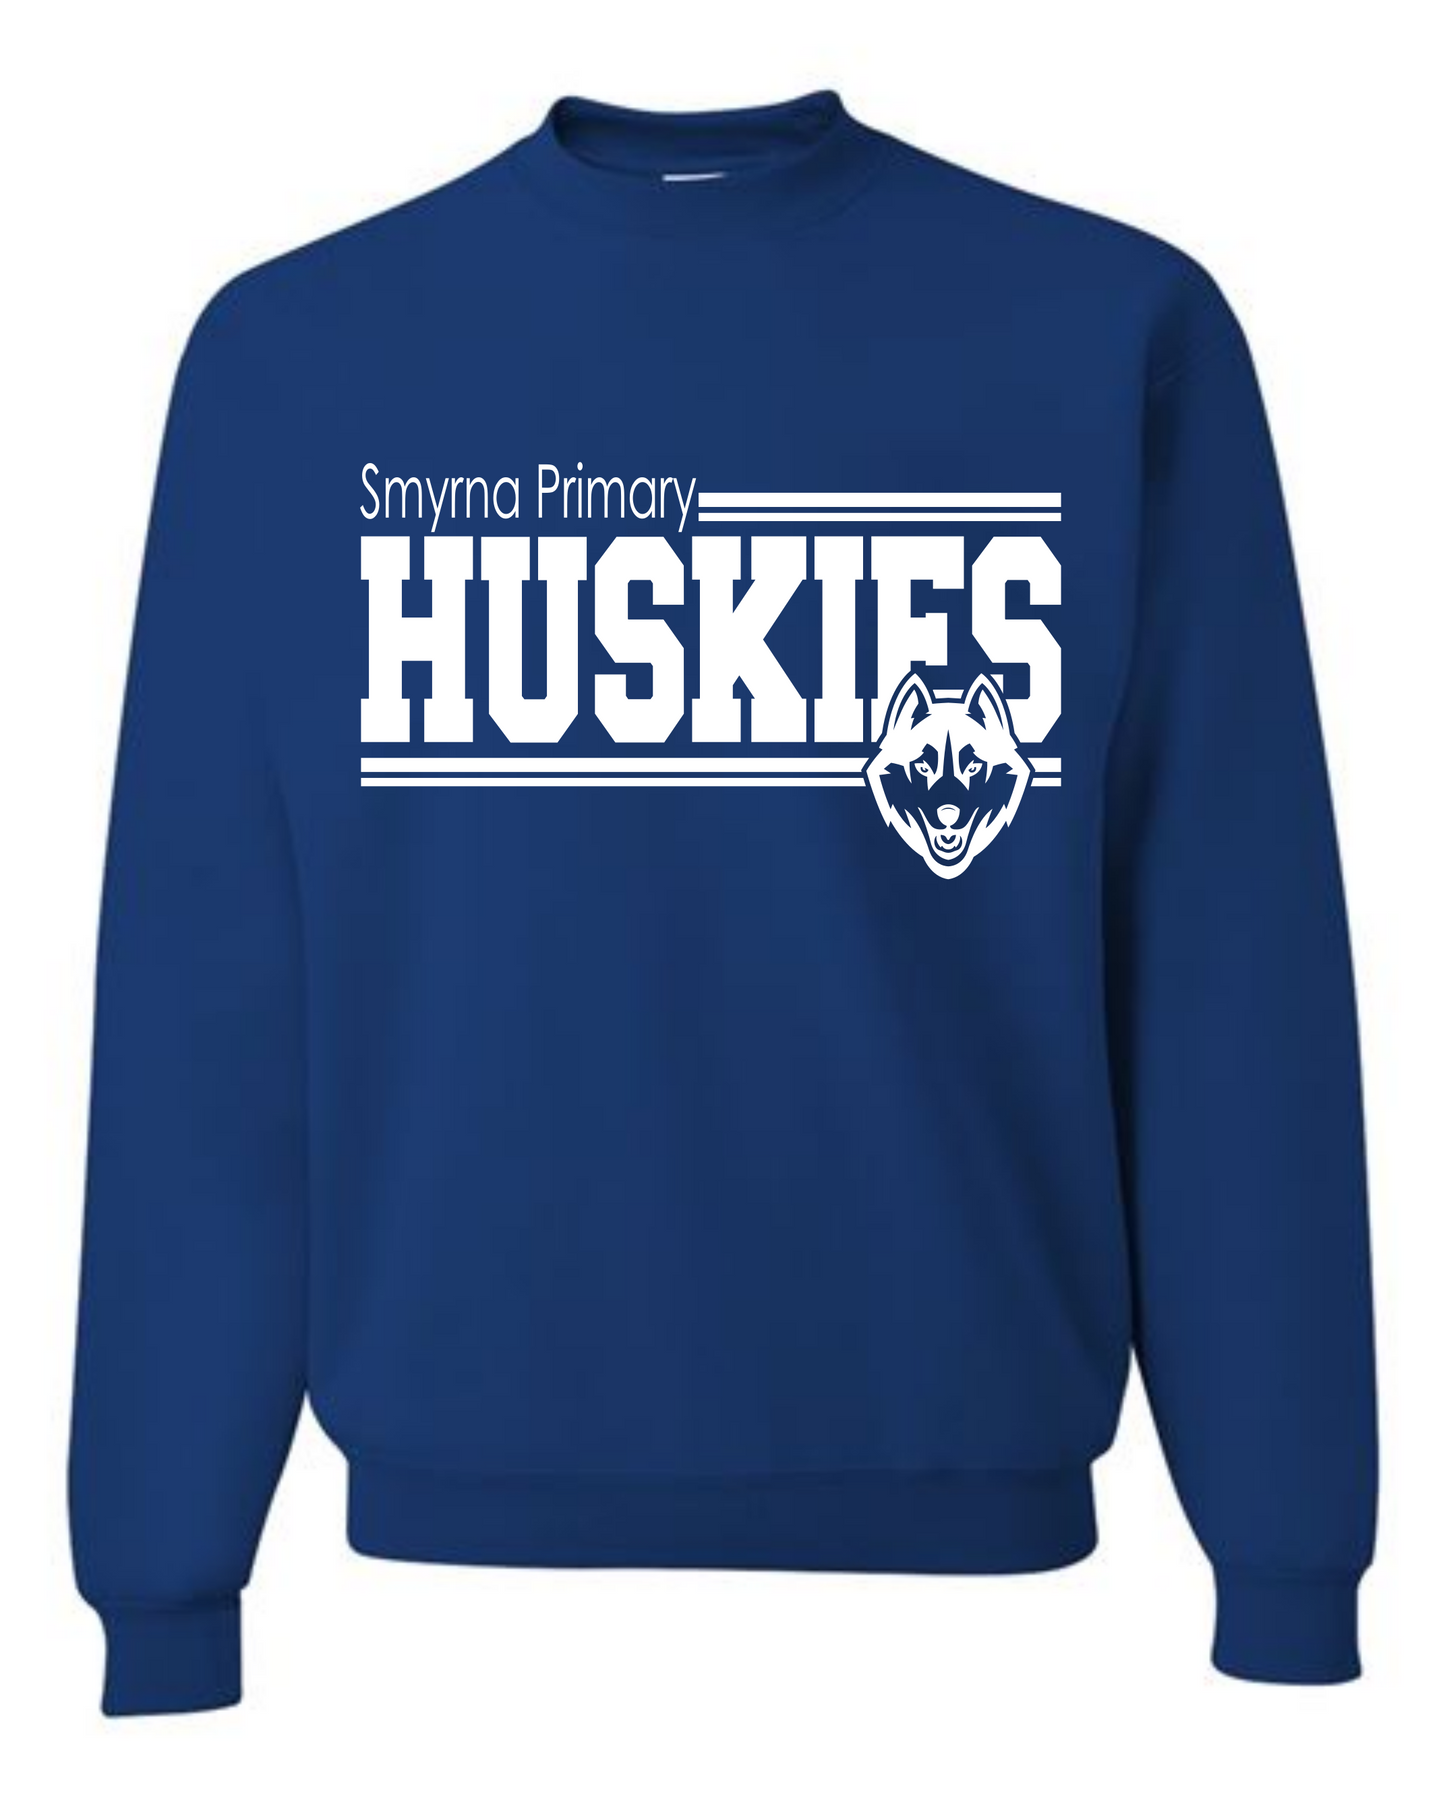 Huskies Sweatshirt